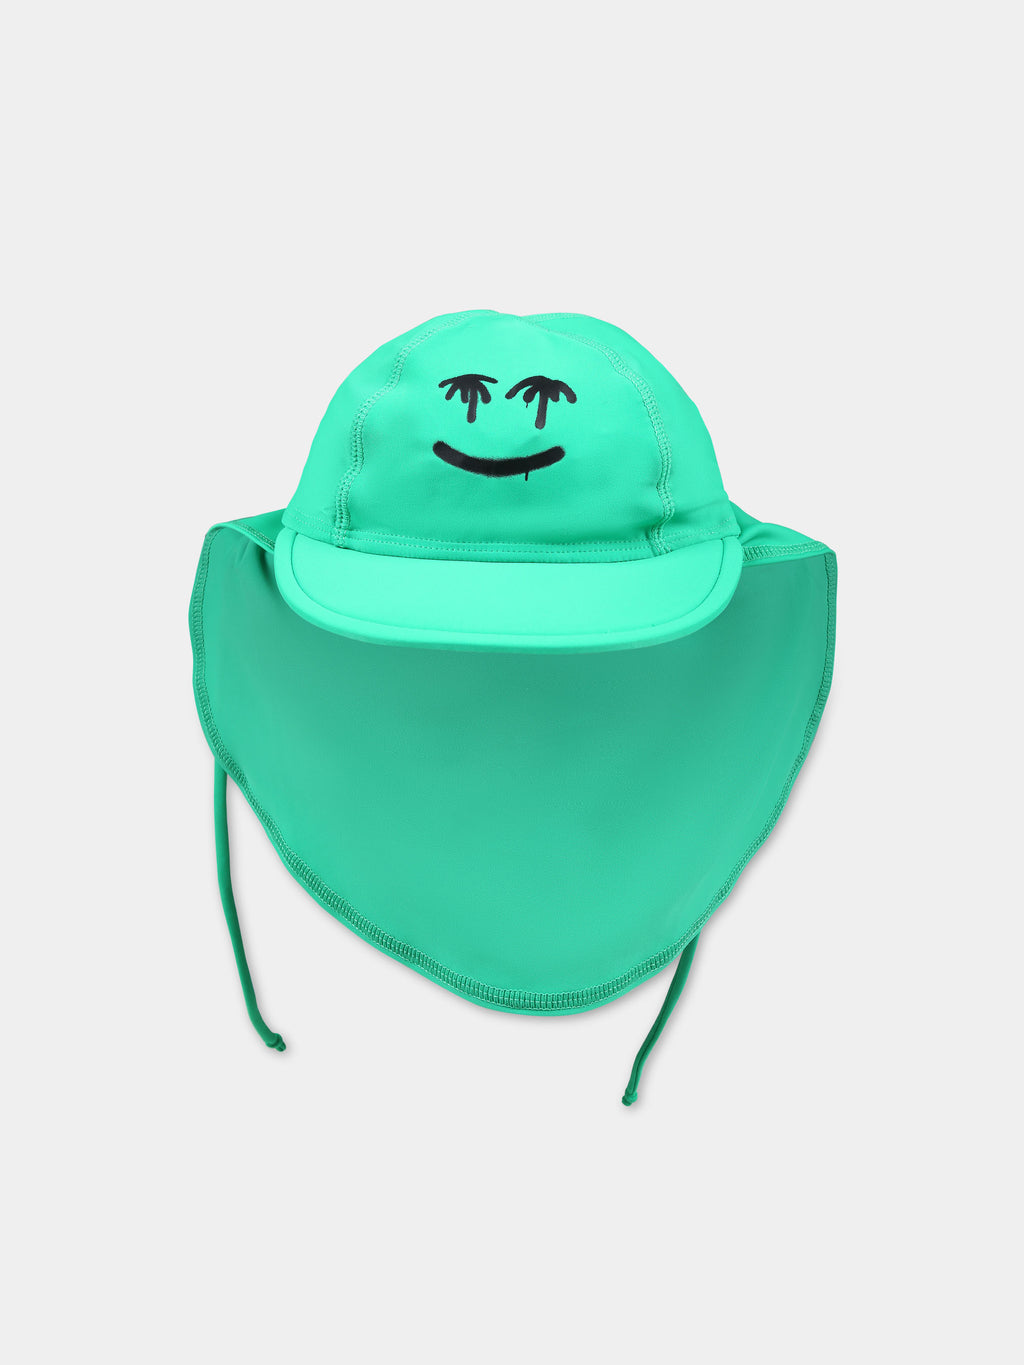 Cappello verde per bambini con smile